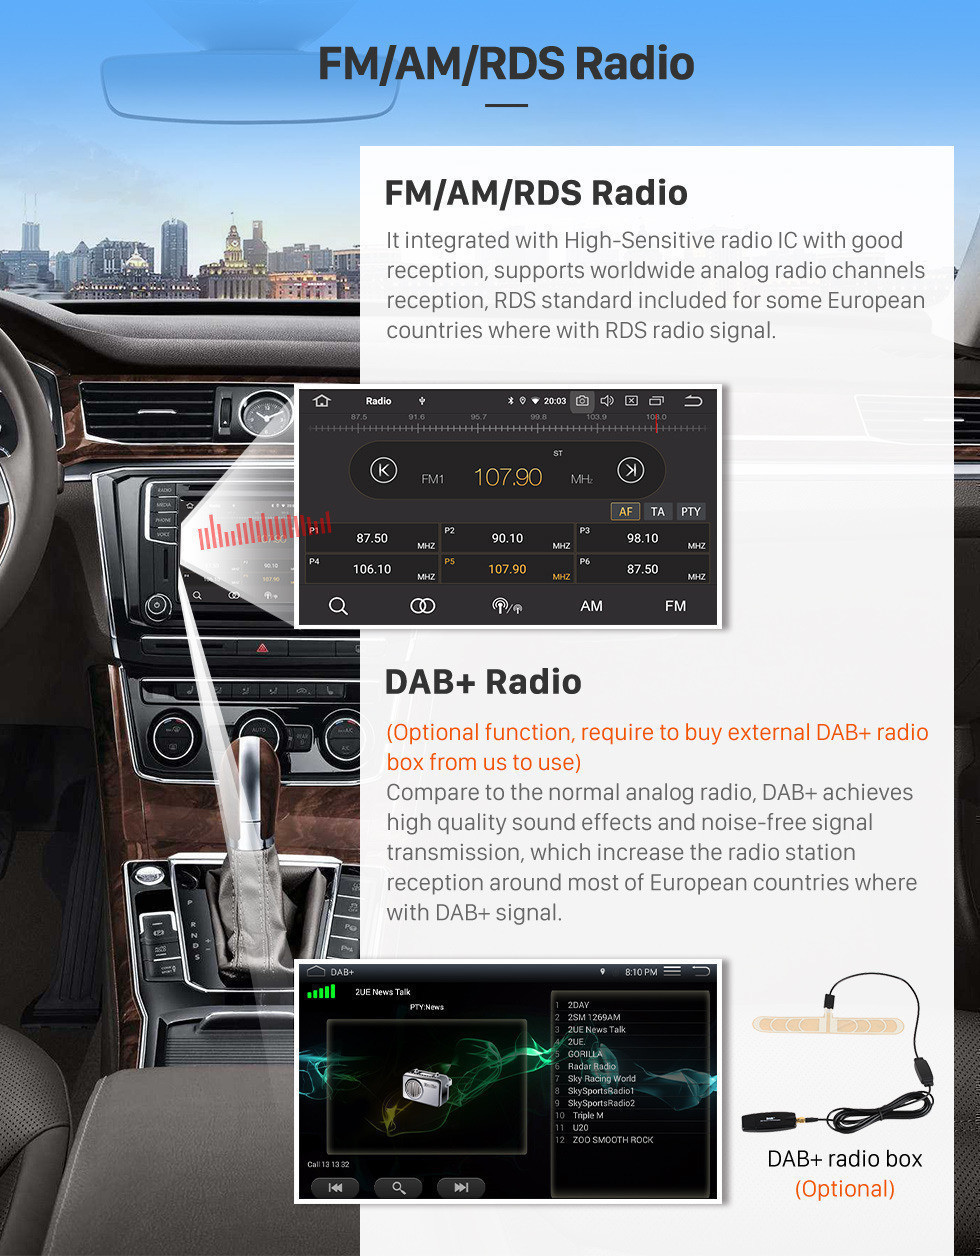 Seicane Android 11.0 2012-2017 Toyota Camry 10,1 Zoll HD Touchscreen Autoradio Kopfeinheit GPS-Navigationssystem Bluetooth Wlan Unterstützung Rückfahrkamera Lenkradsteuerung USB DVR